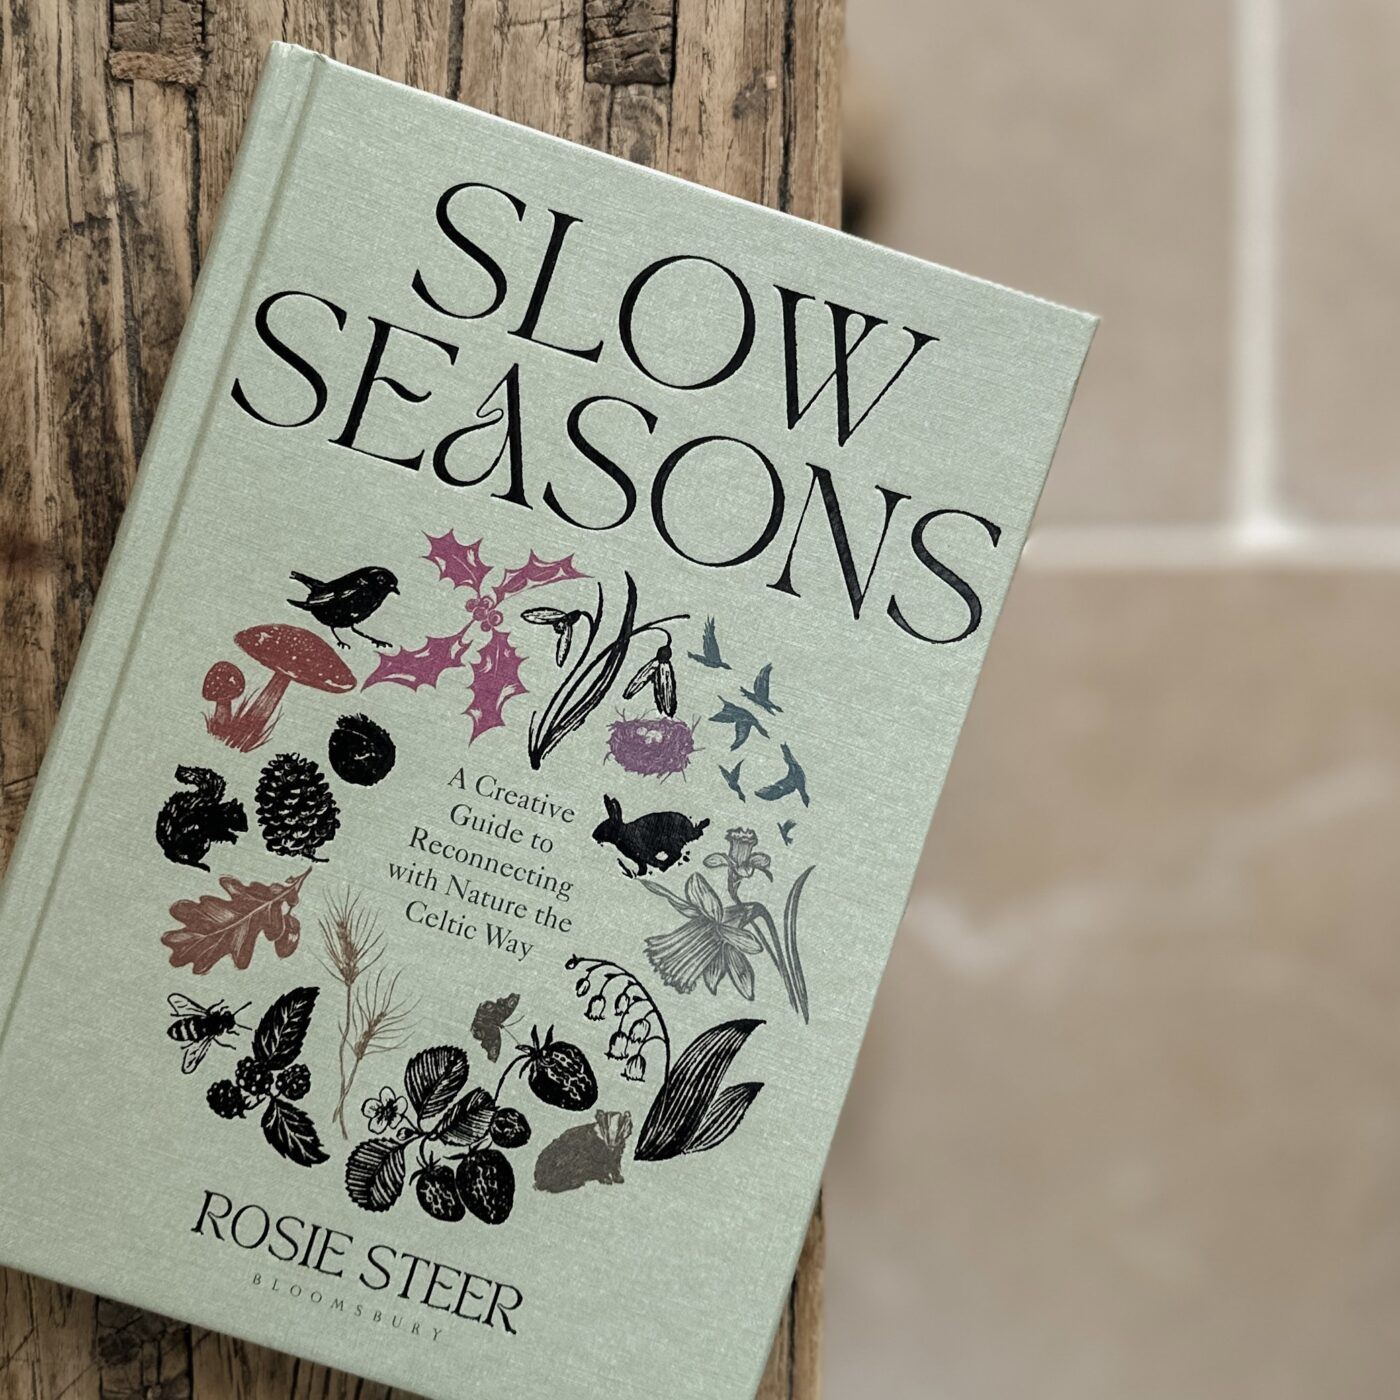 Slow Living LDN. book club: Slow Seasons by Rosie Steer